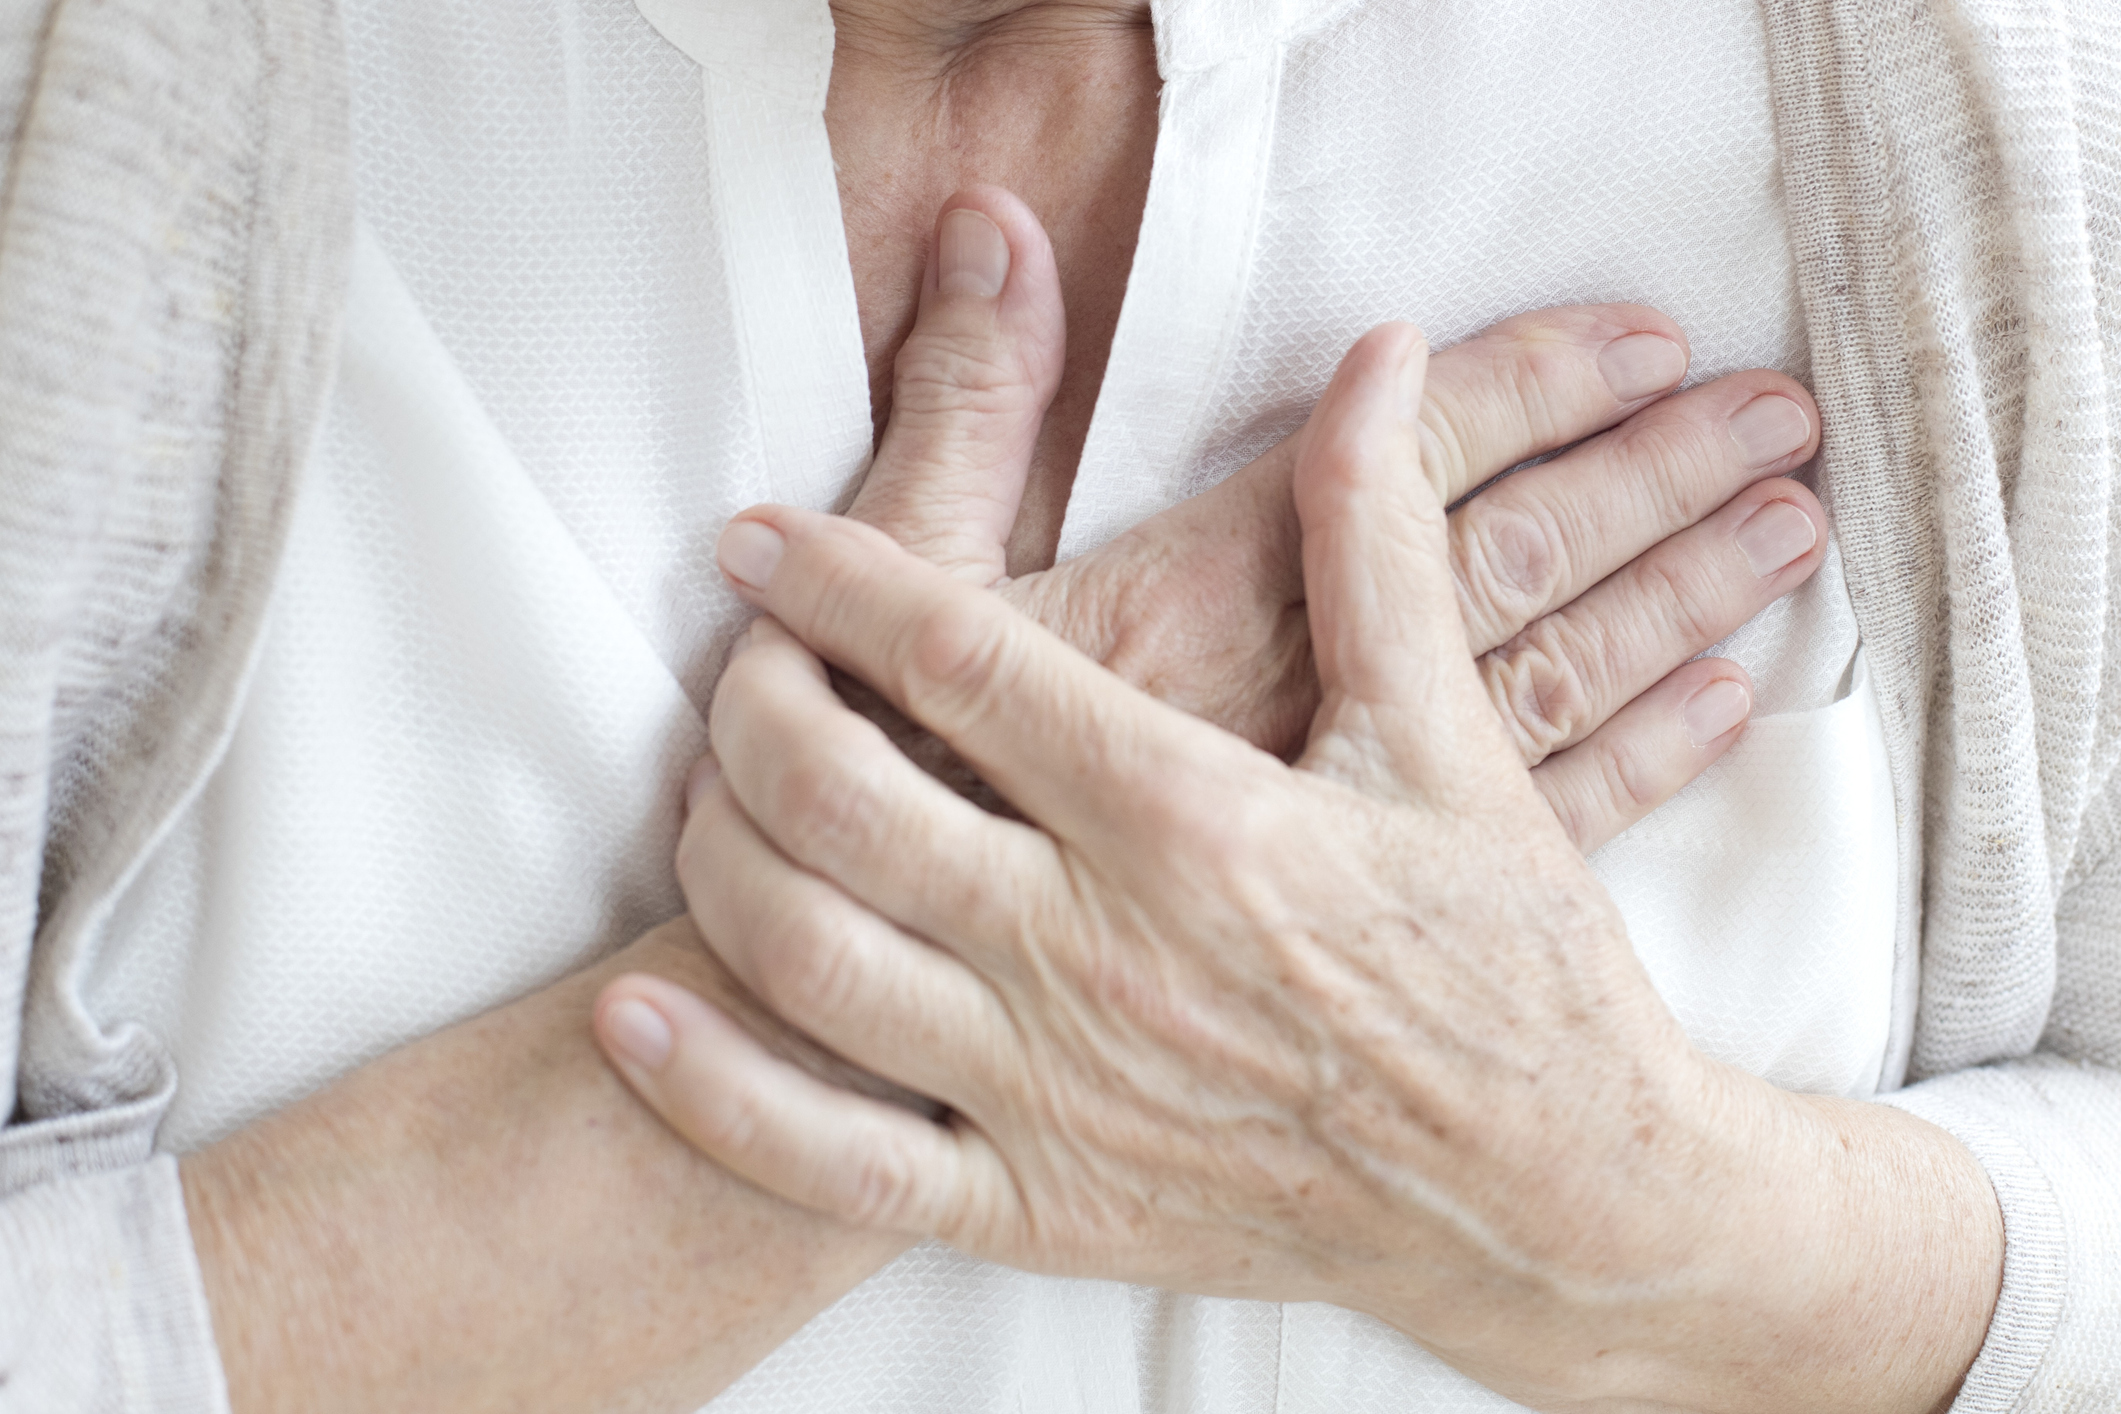 Vigyázat, ezek a szívinfarktus jelei! Tudd meg, mi a teendő szívinfarktus esetén!